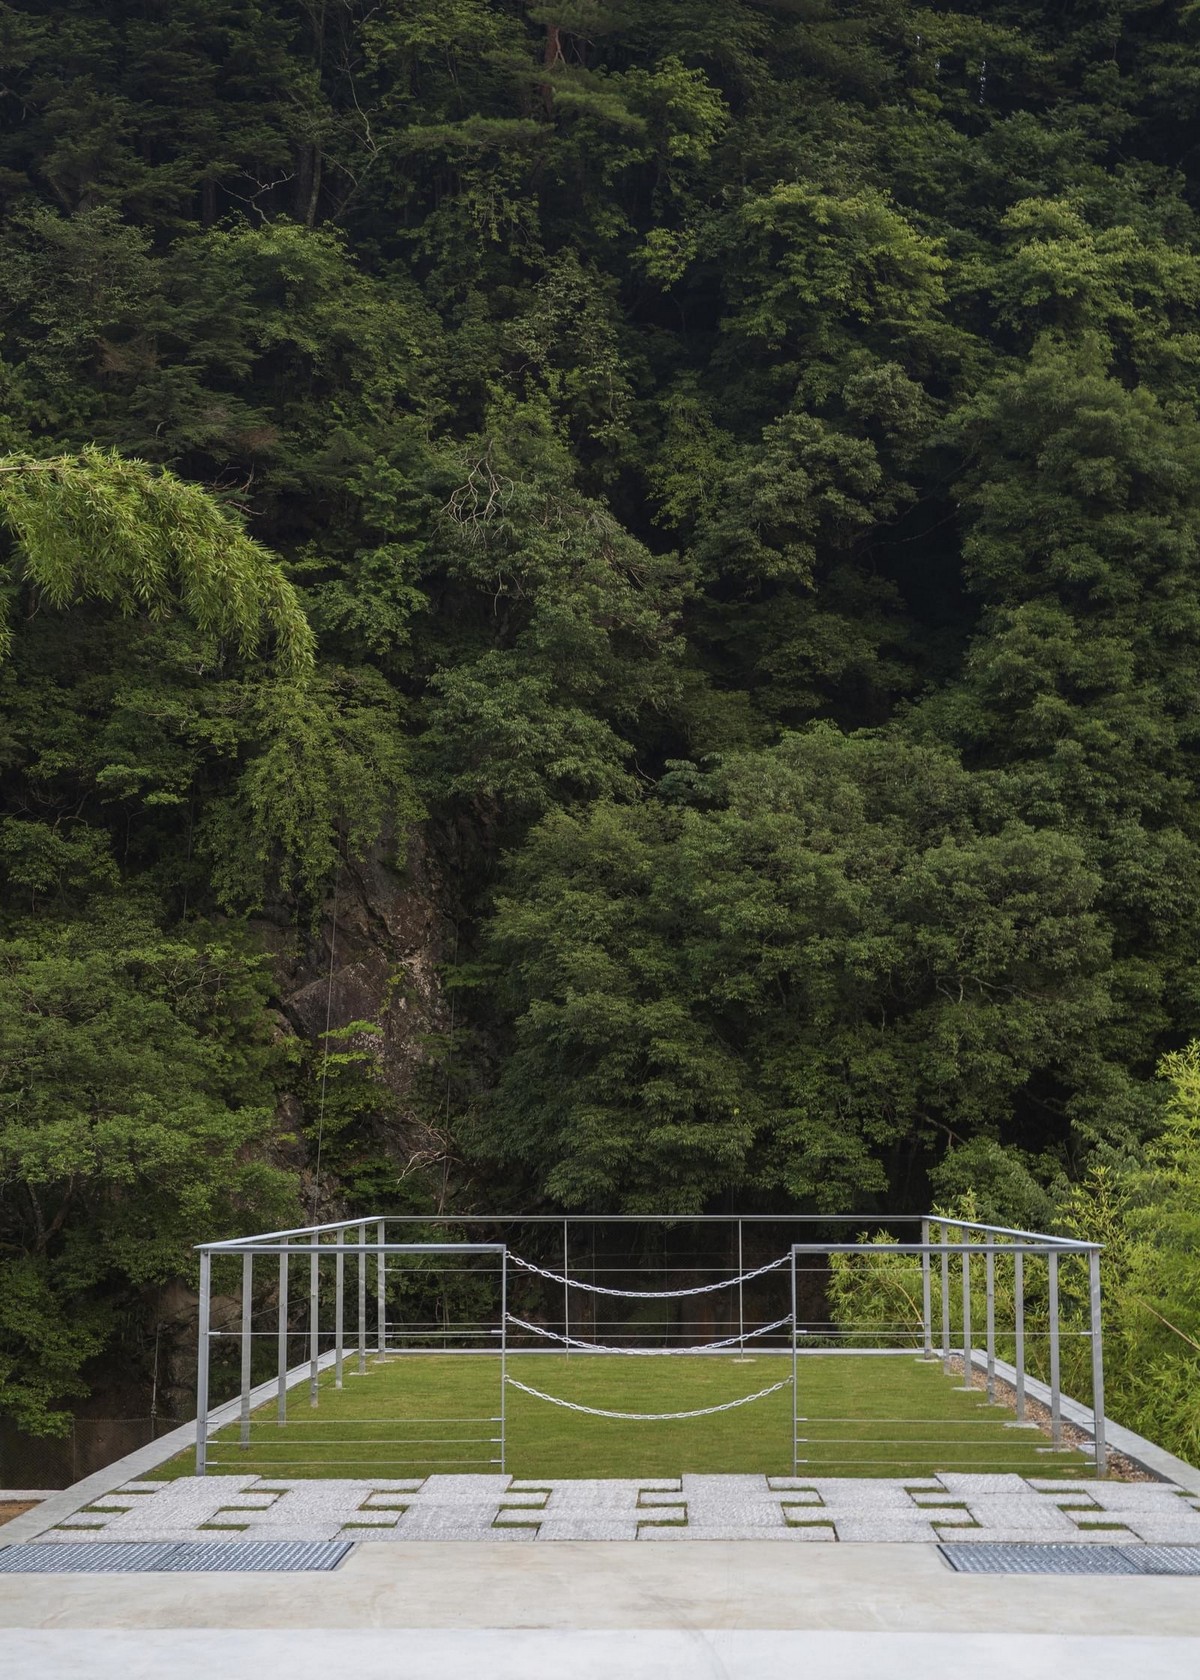 Частный дом на краю горного обрыва в Японии Картинки и фото